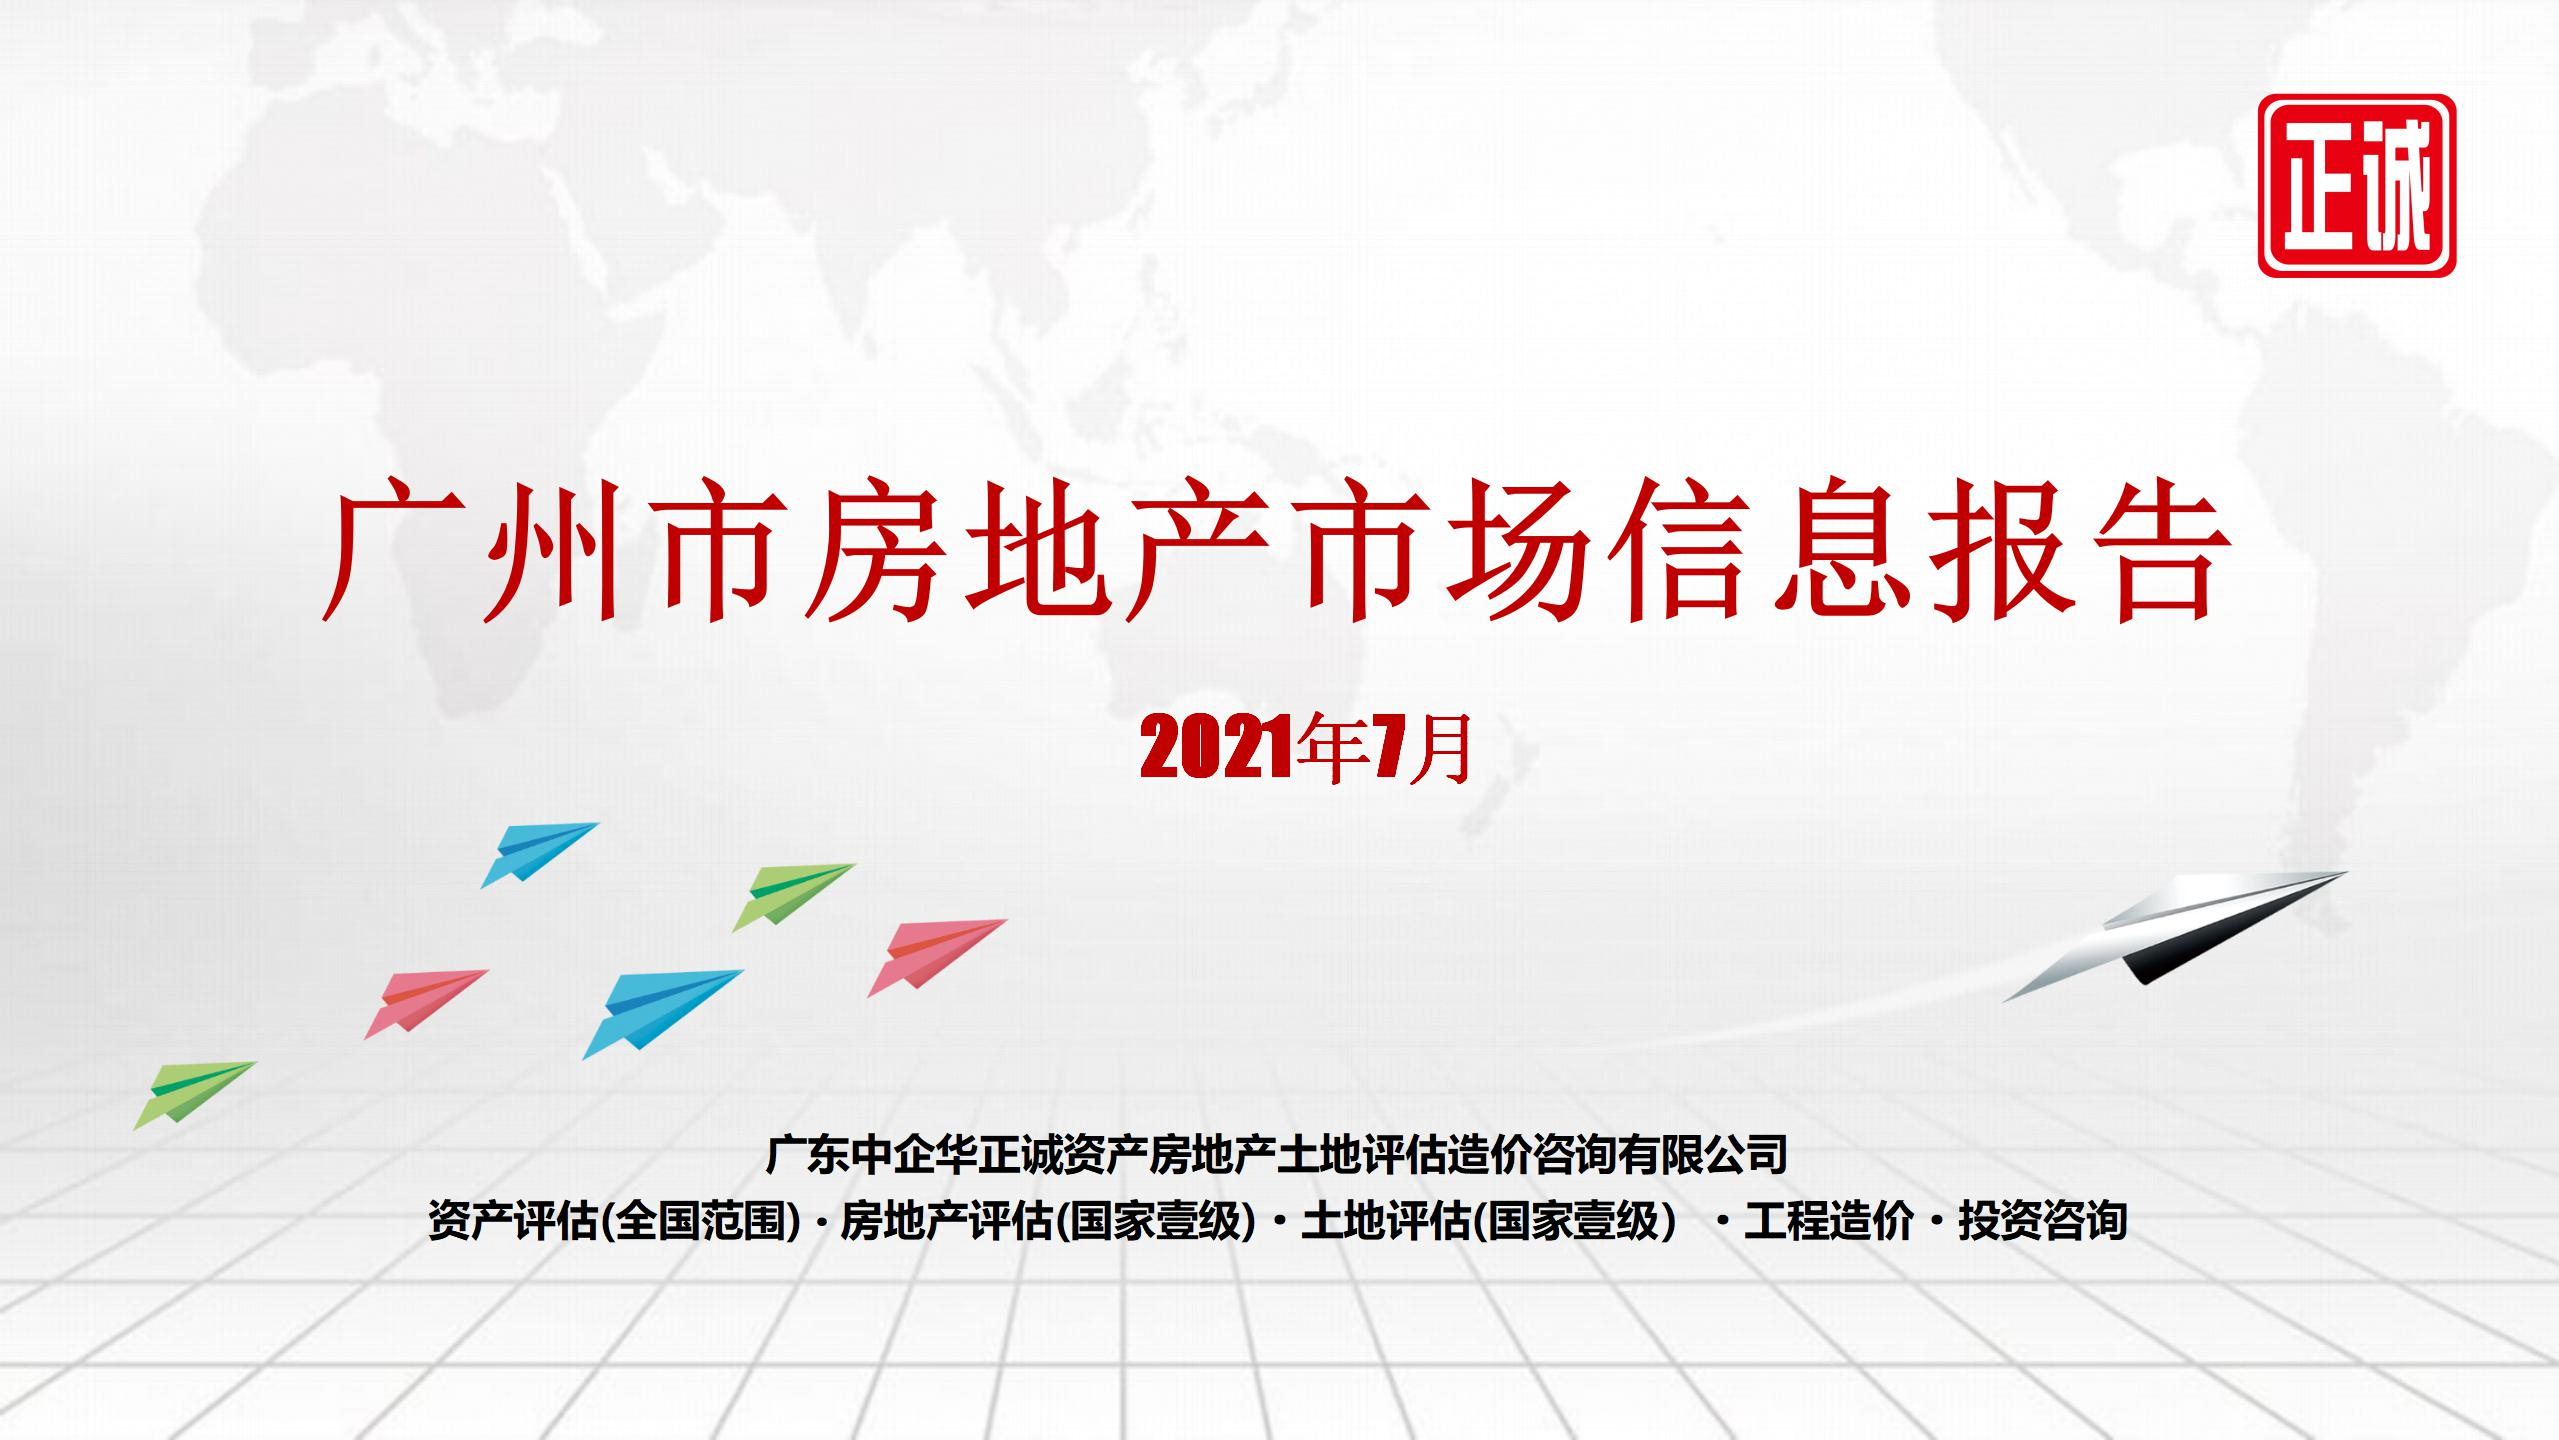 2021年7月廣州市房地產市場信息報告